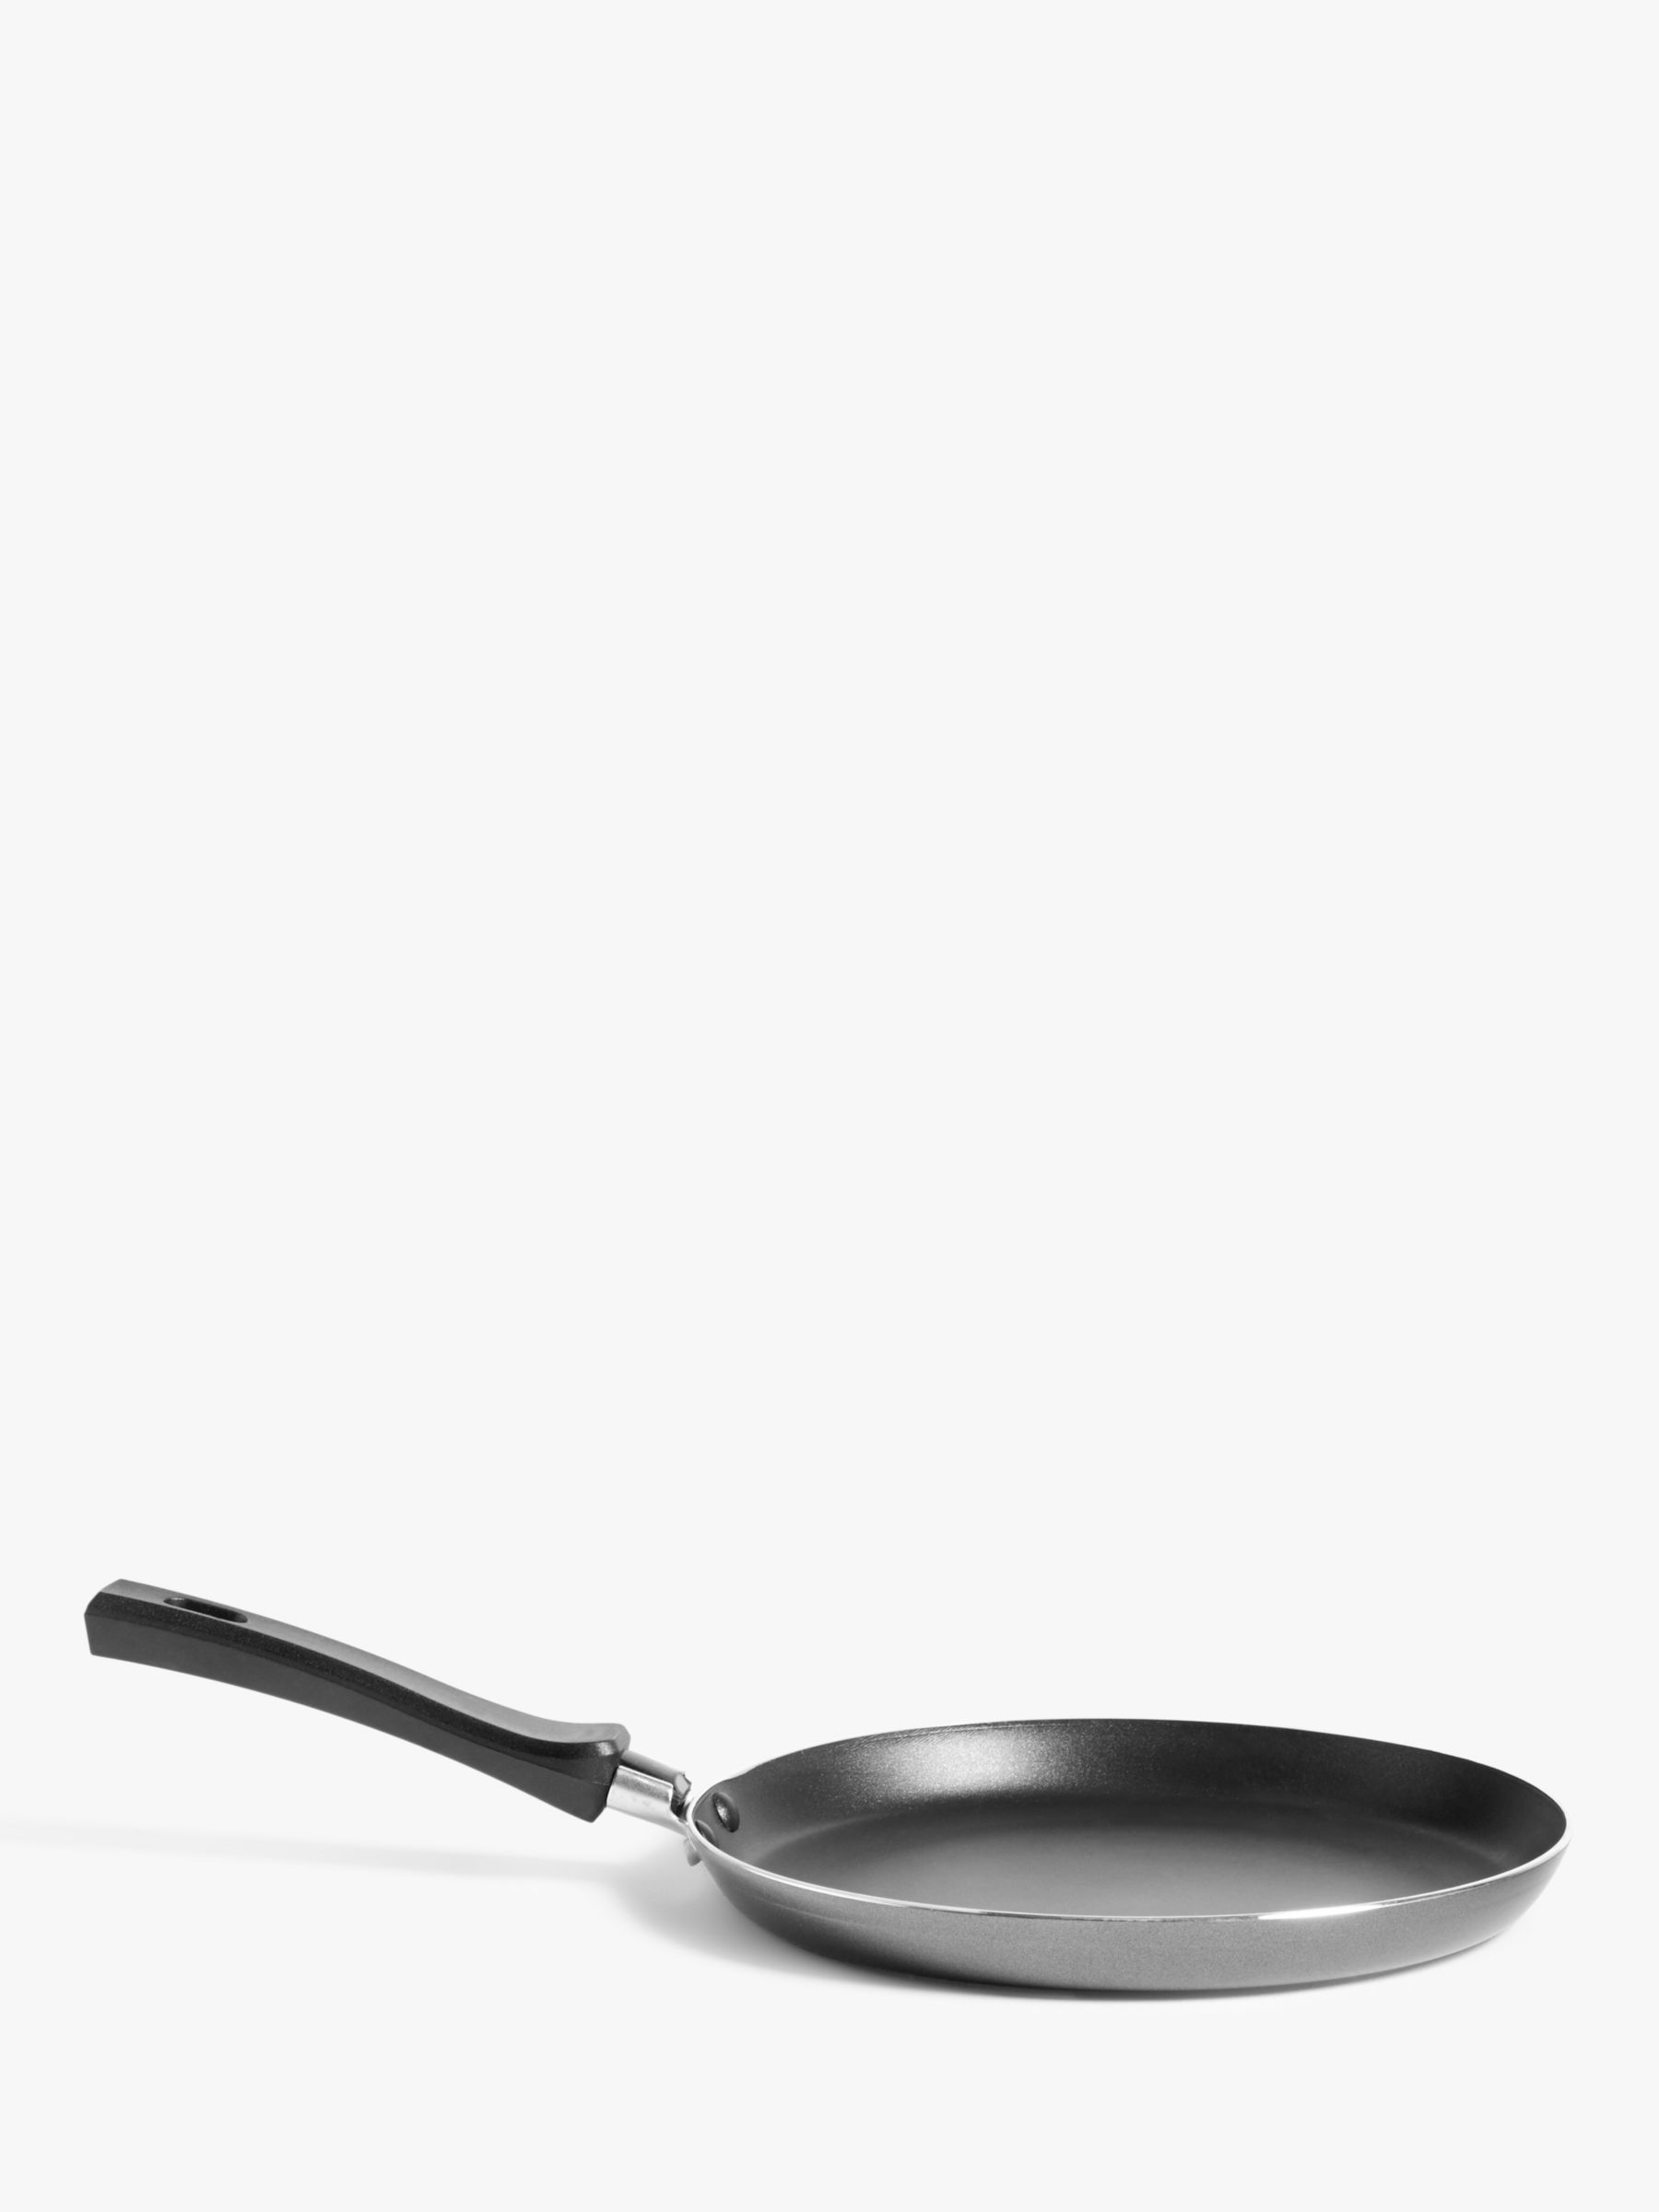 John Lewis ANYDAY Aluminium Non-Stick Pancake Frying Pan, 24cm